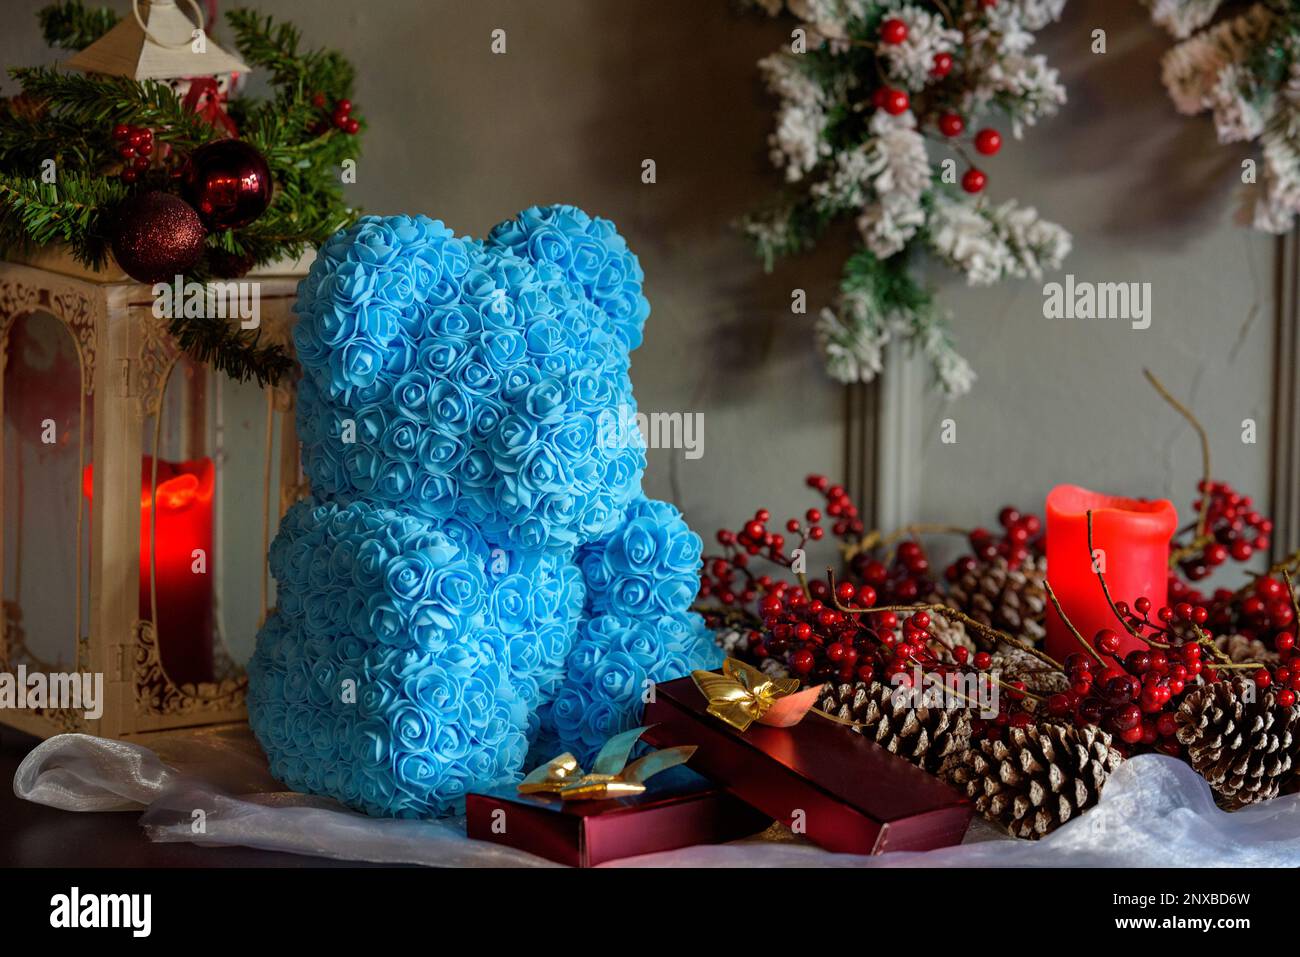 Primo piano di un orsacchiotto blu fatto di rose su un tavolo accanto a decorazioni natalizie assortite Foto Stock